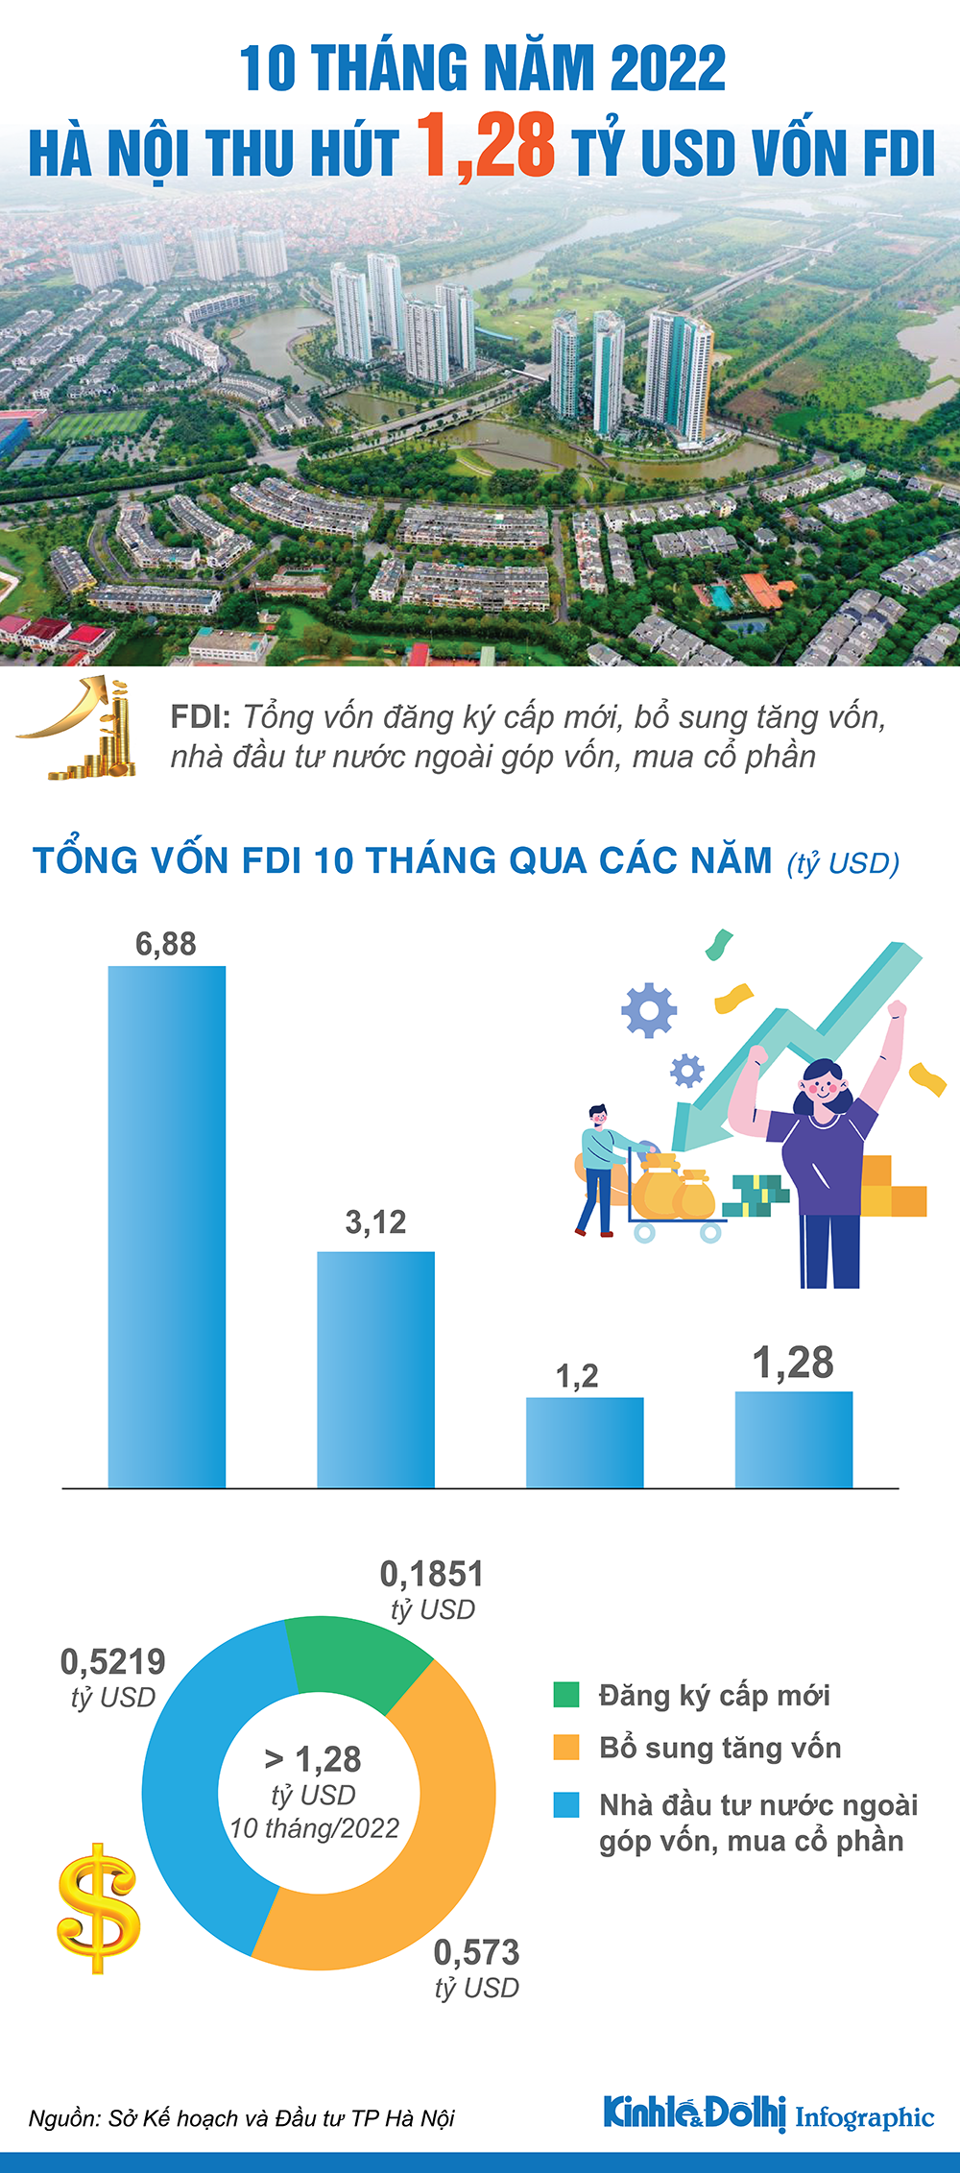 Hà Nội thu hút 1,28 tỷ USD vốn FDI trong 10 tháng năm 2022 - Ảnh 1